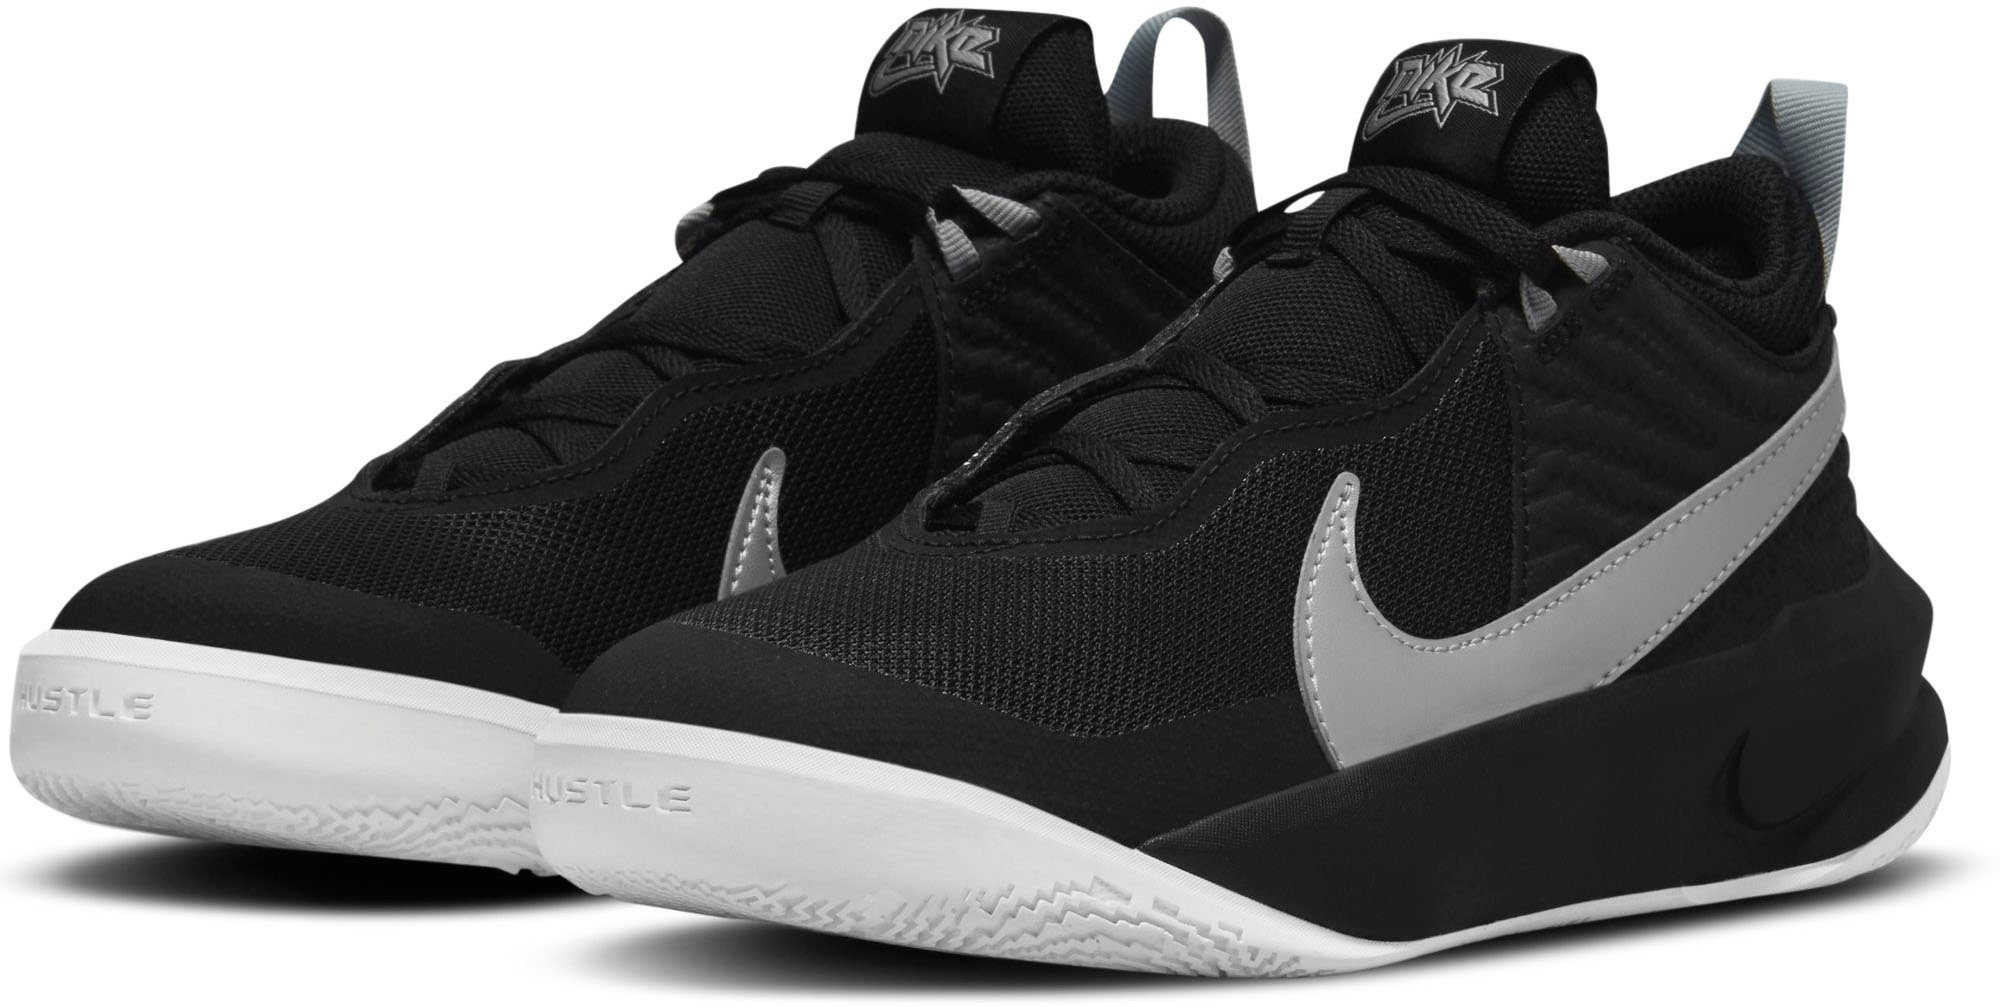 Nike »TEAM HUSTLE D 10« Basketballschuh online kaufen | OTTO